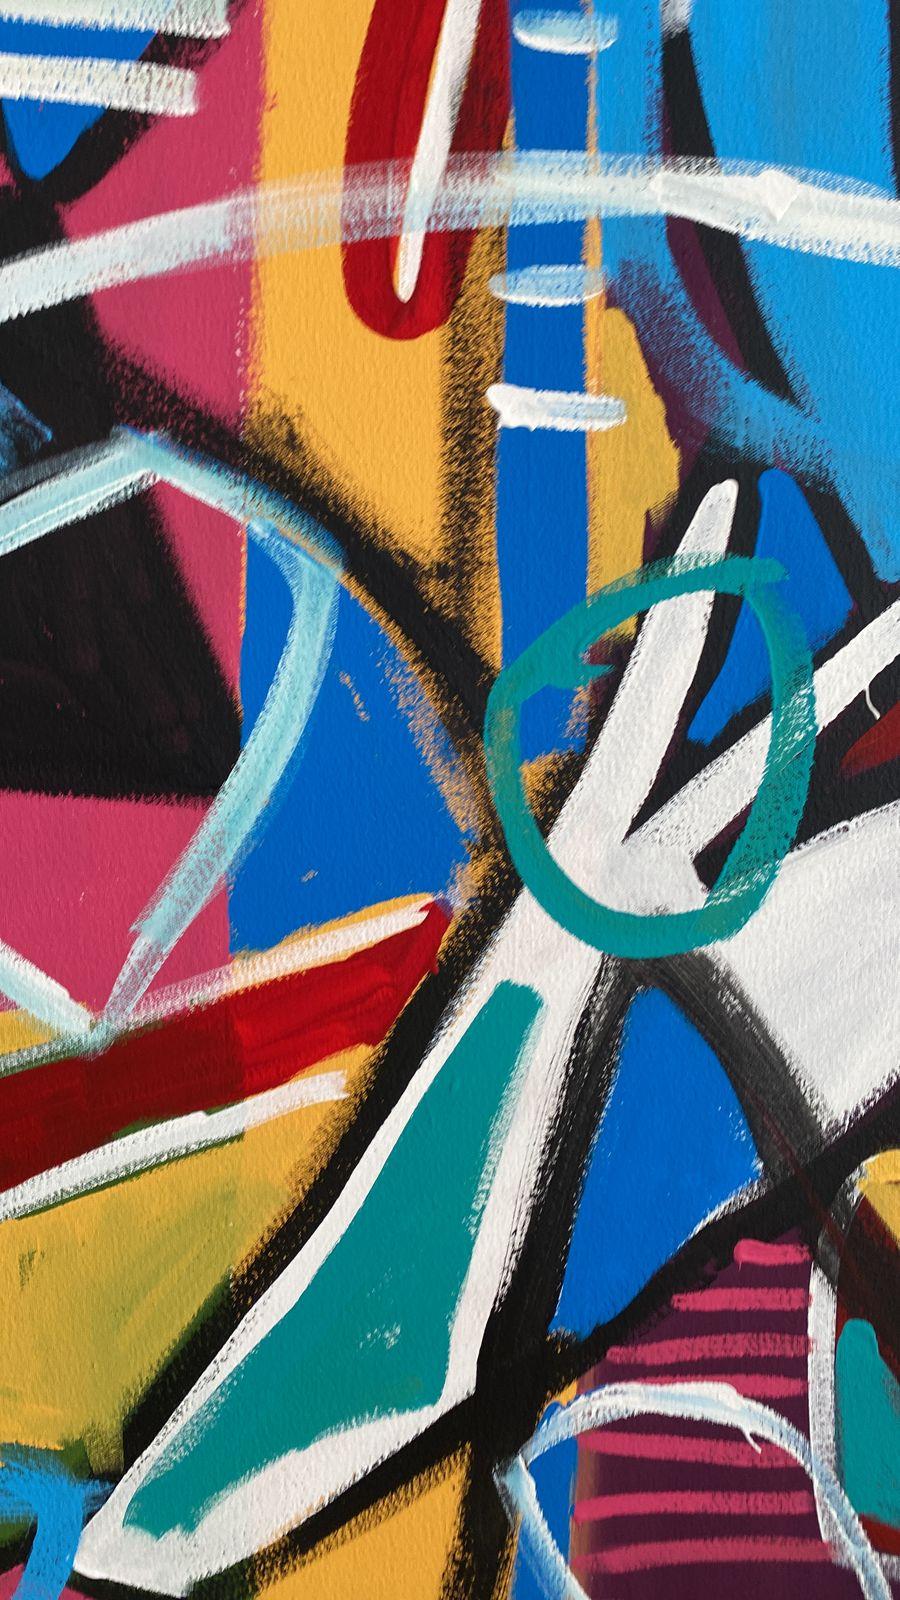 Art contemporain, peinture abstraite
Acrylique sur toile
204x330cm
Signé 
LIVRAISON GRATUITE ROLLE




A propos de l'artiste
Enrique Pichardo (Mexico, 1973) est diplômé de l'Escuela Nacional de Pintura, Escultura y Grabado (ENPEG) 